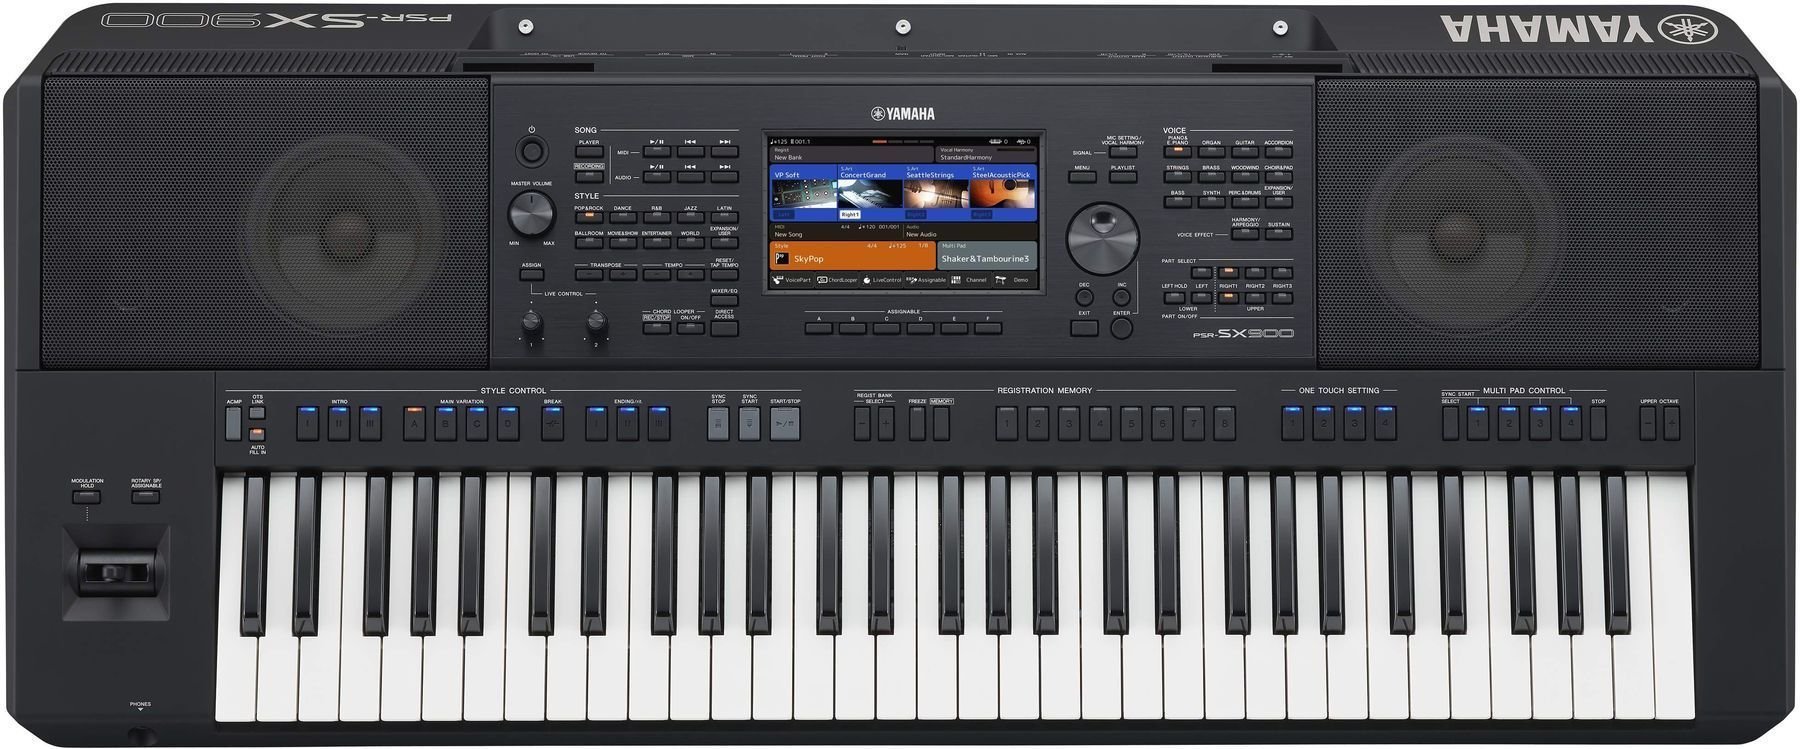 Professional Keyboard Yamaha PSR-SX900